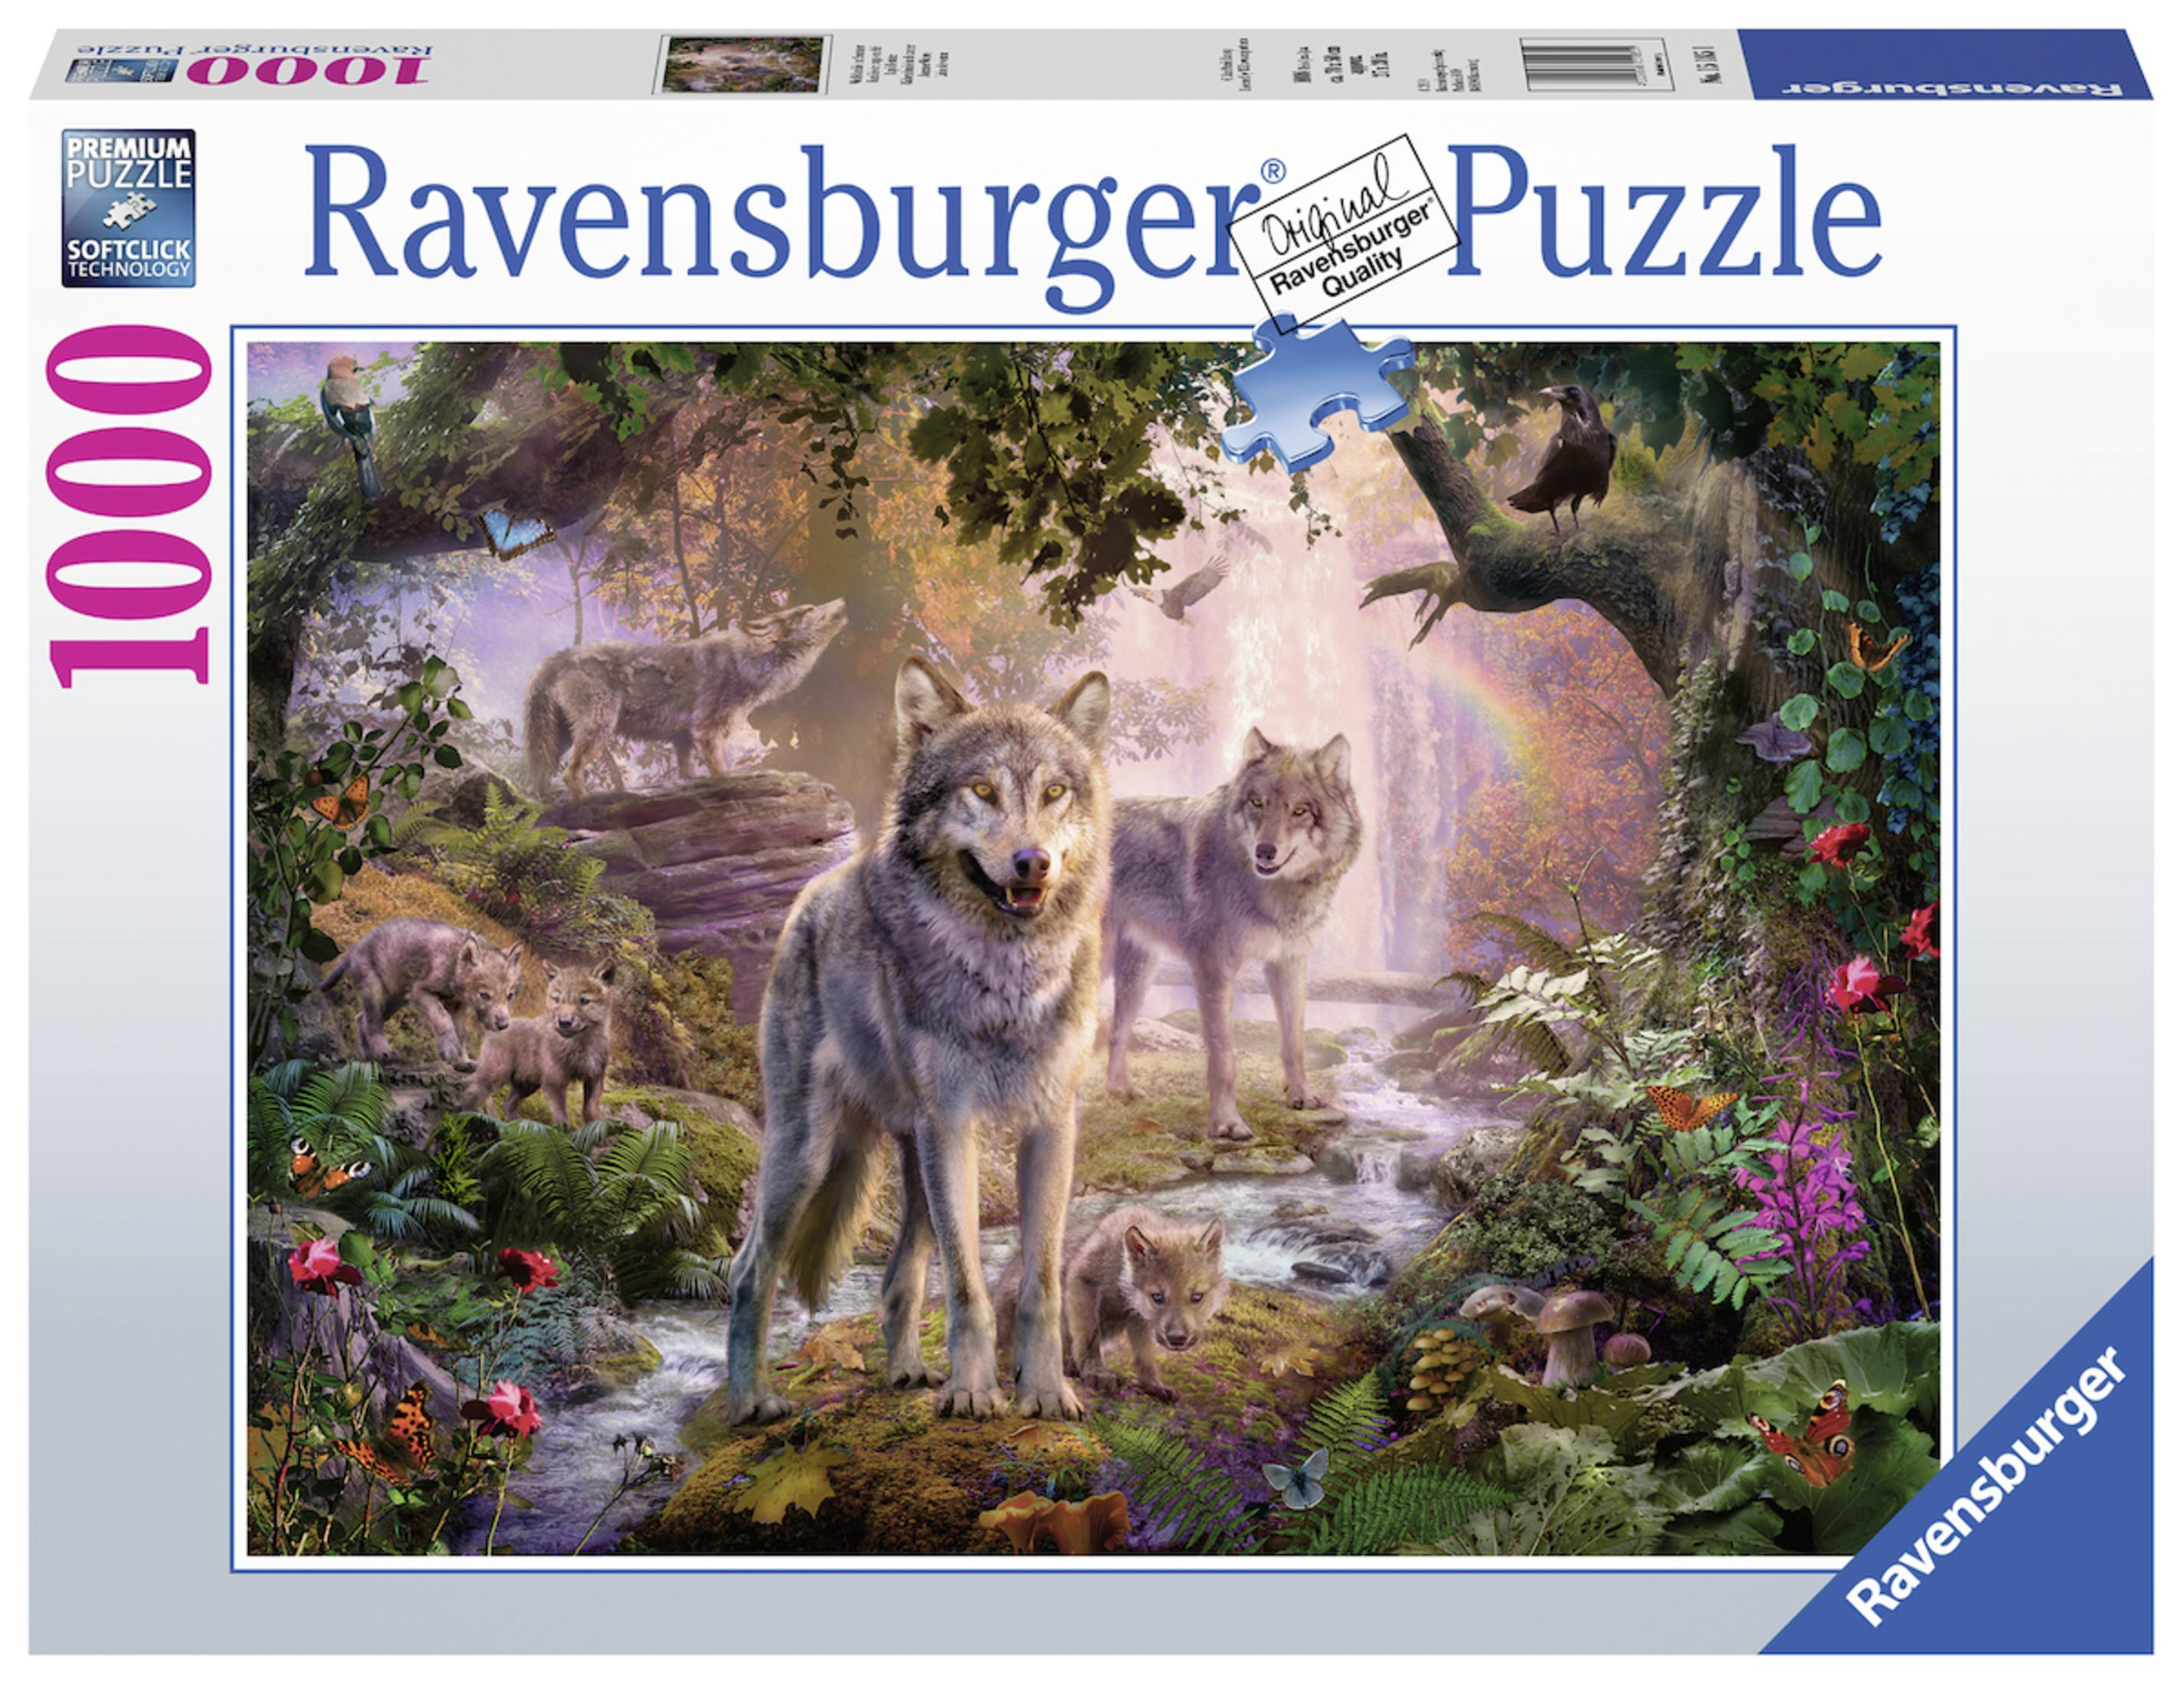 RAVENSBURGER 15185 IM Puzzle SOMMER WOLFSFAMILIE